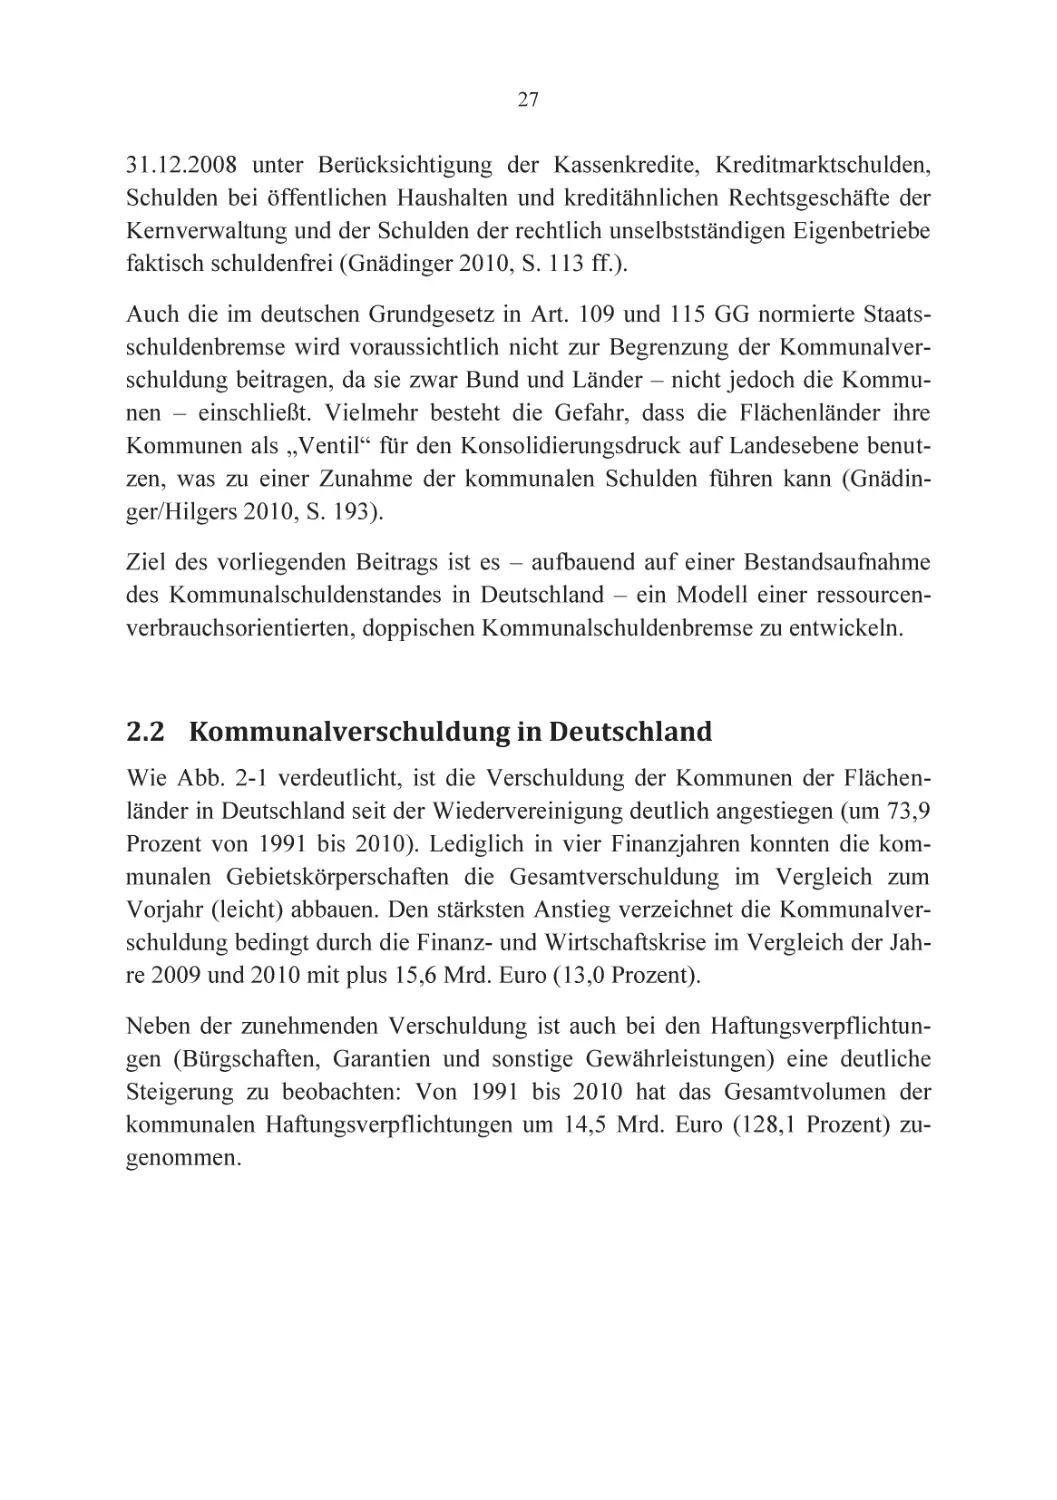 2.2 Kommunalverschuldung in Deutschland